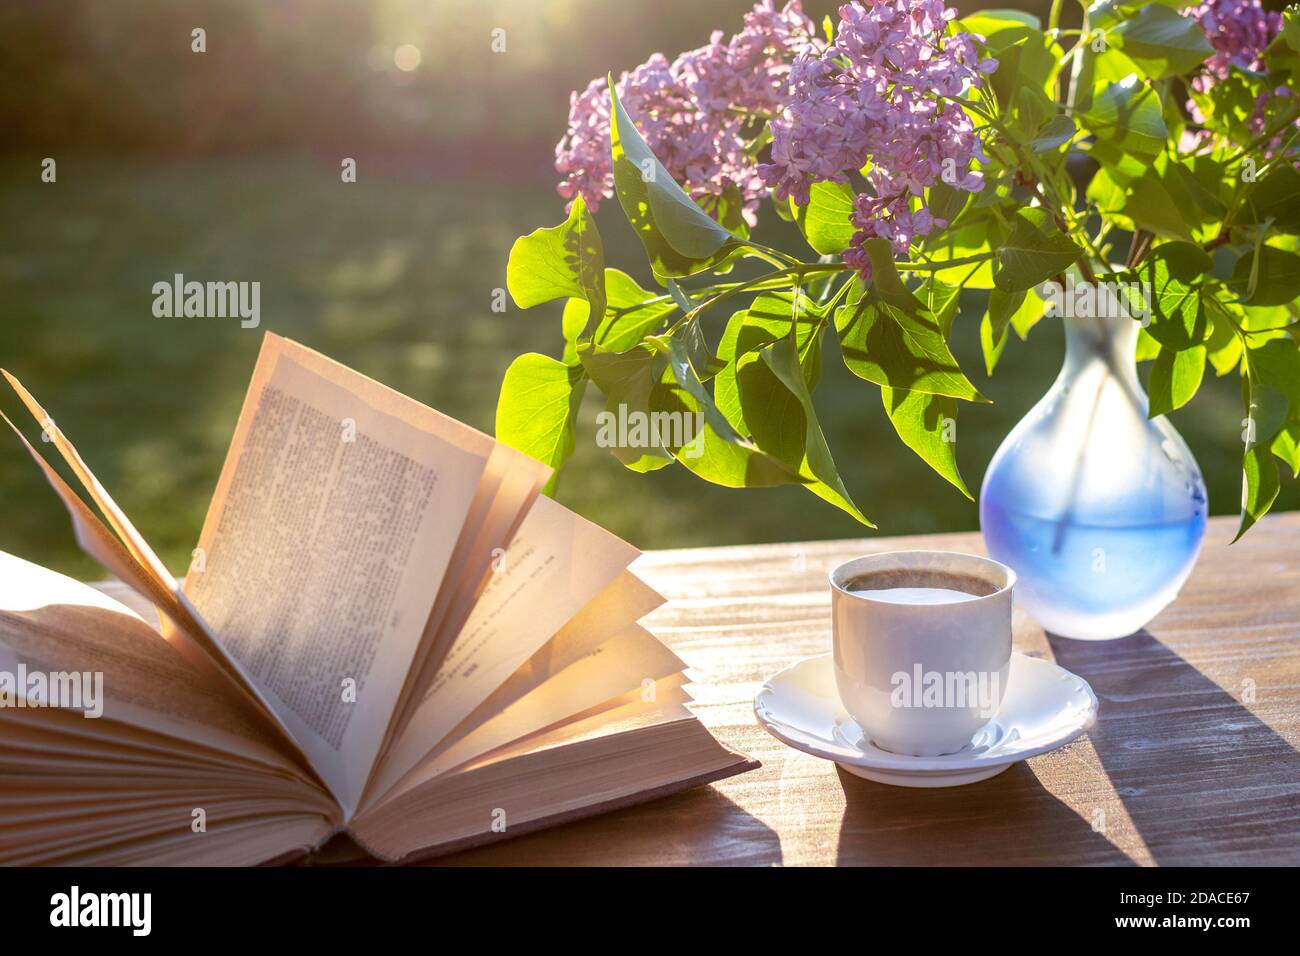 Petite tasse blanche d'espresso, livre ouvert, vase bleu semi-transparent avec fleurs de lilas pourpres sur table rustique en bois dans le jardin Banque D'Images